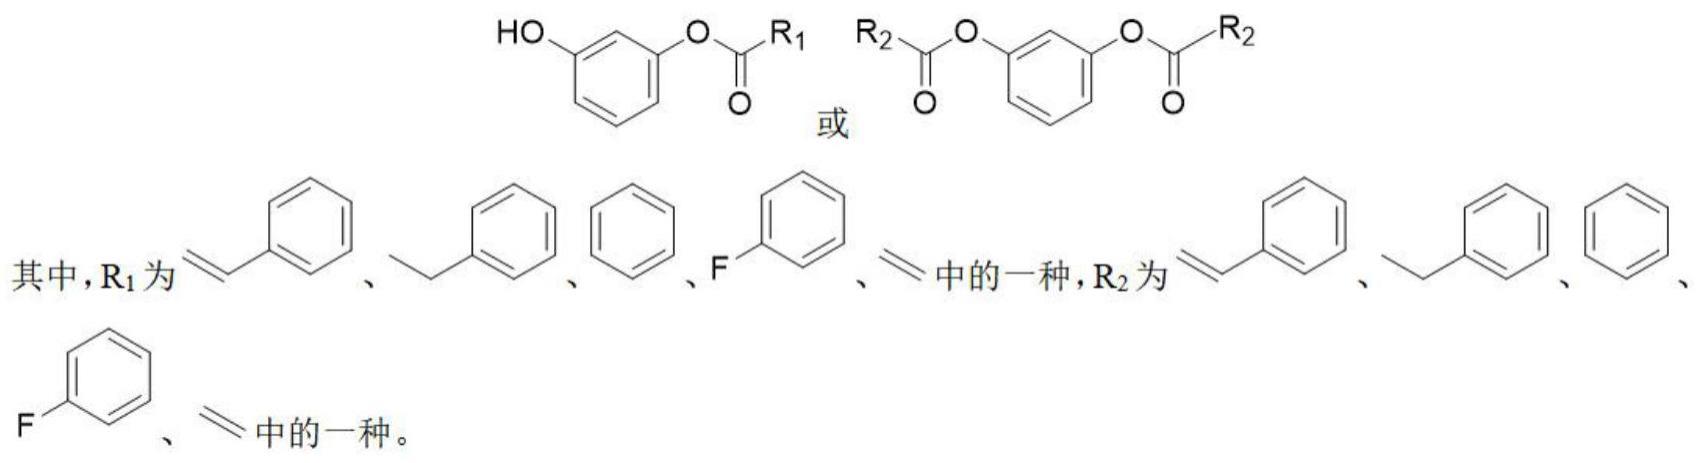 一种具有酪氨酸酶抑制活性的间苯二酚酯衍生物制备方法